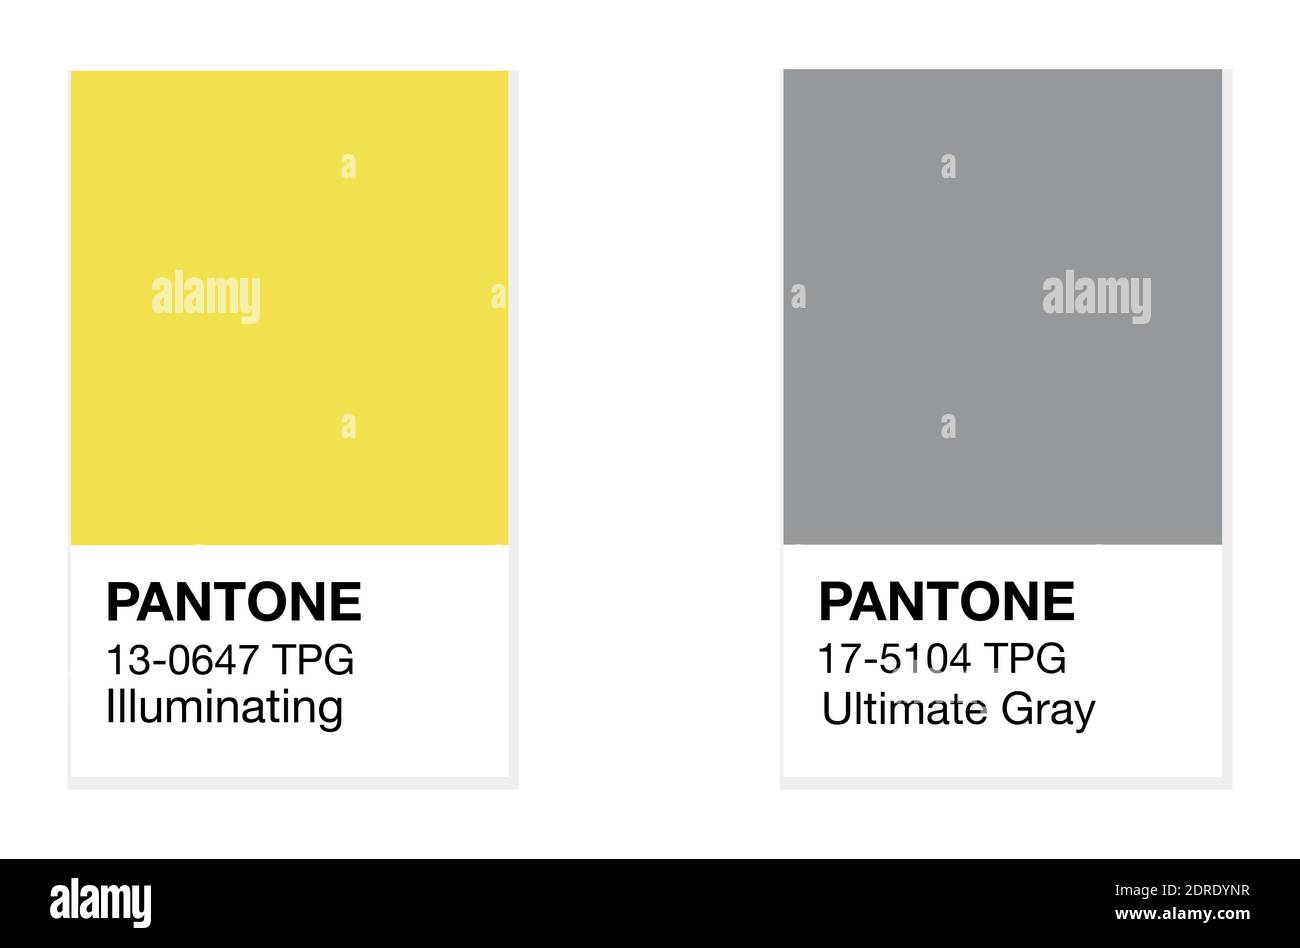 SWINDON, Royaume-Uni - 20 DÉCEMBRE 2020: Pantone Illumining Yellow and Ultimate Grey Trending Colors of the Year 2021. Illustration vectorielle des nuances de couleurs Illustration de Vecteur